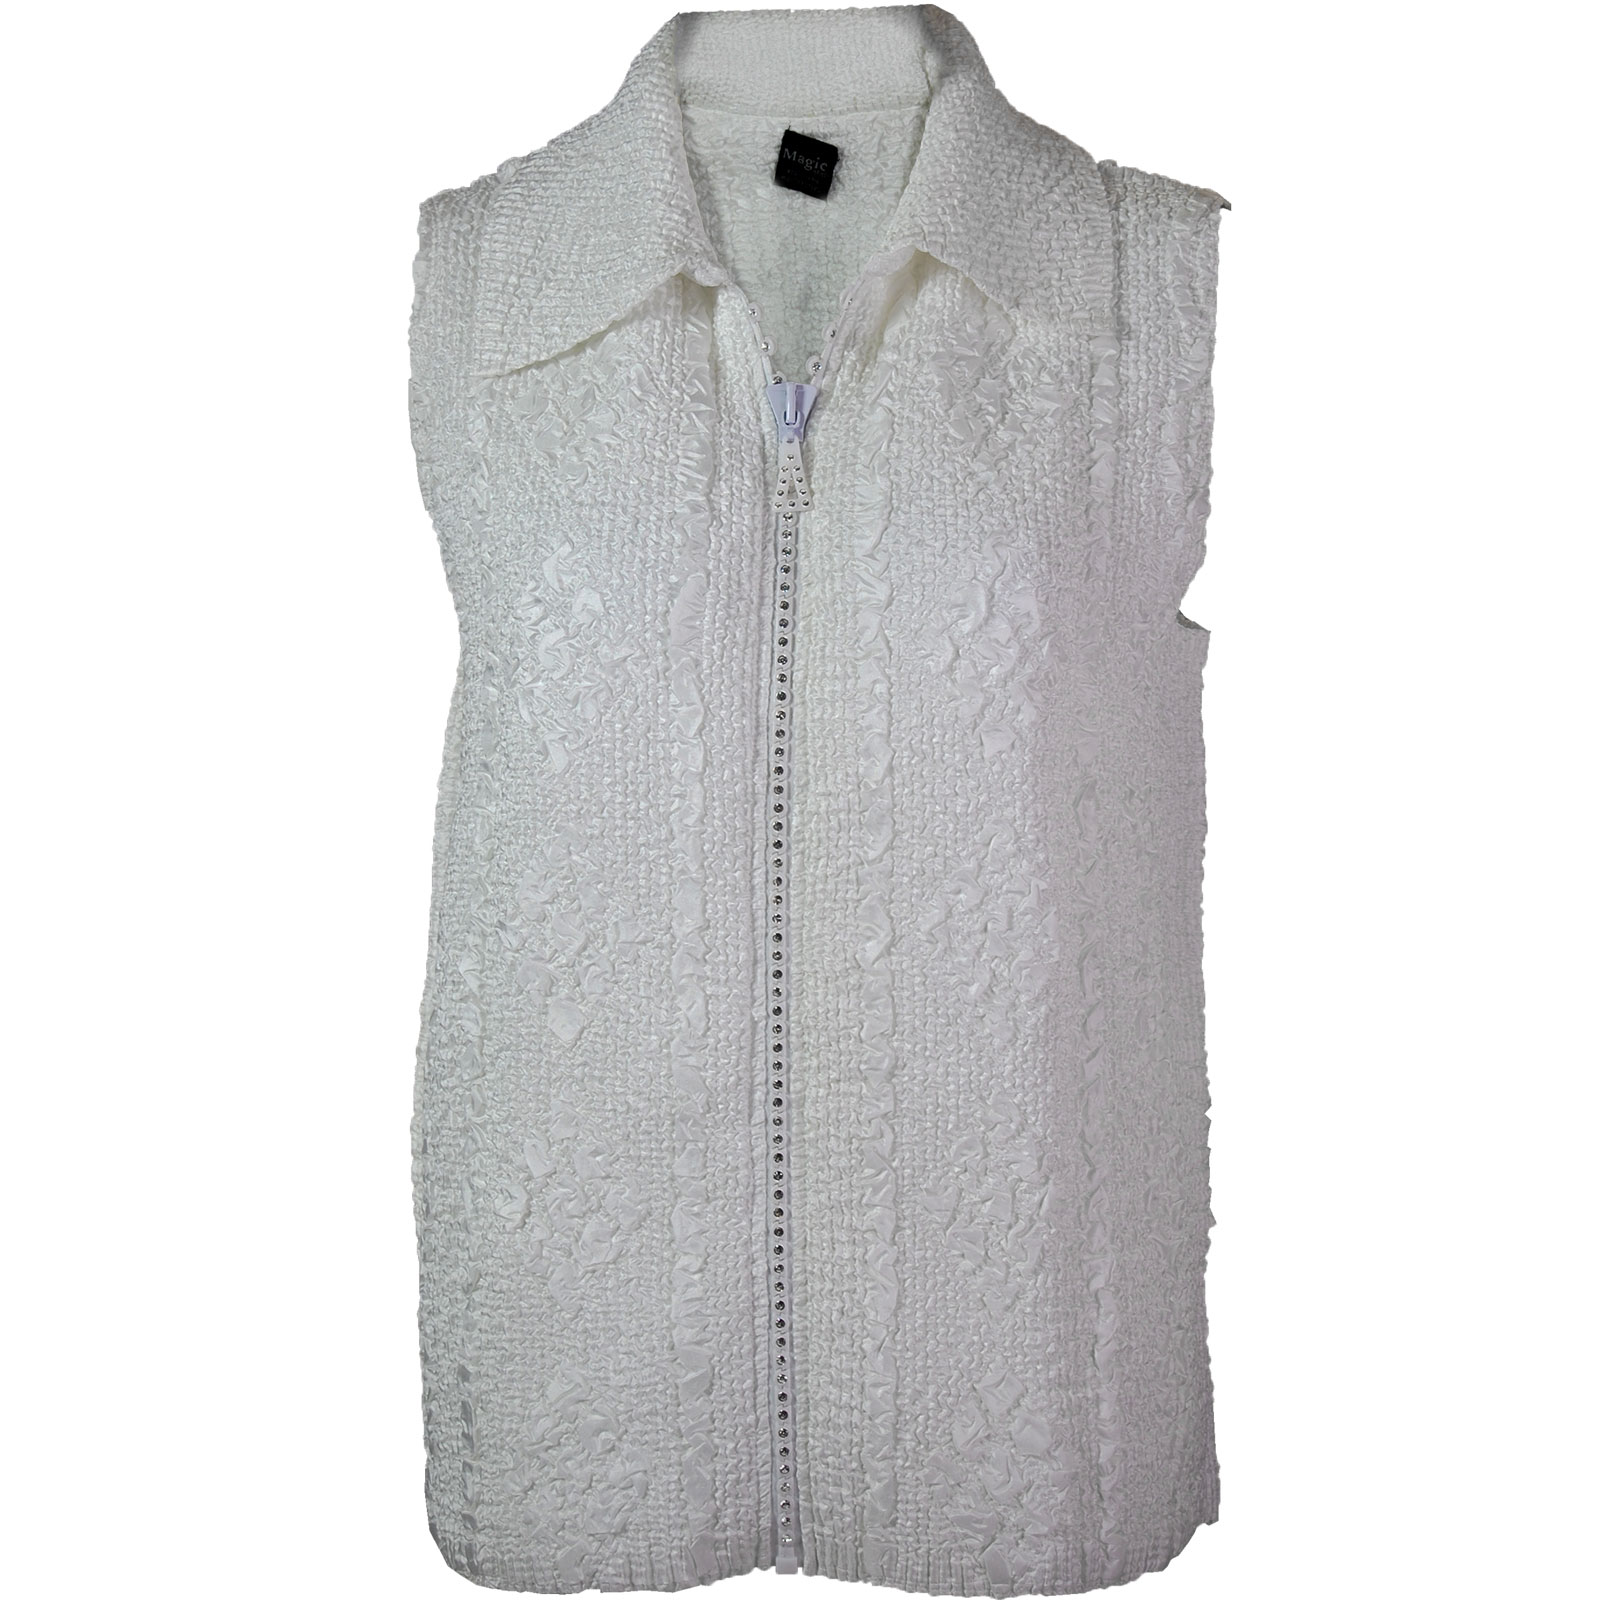 White <br>Diamond Zipper Vest